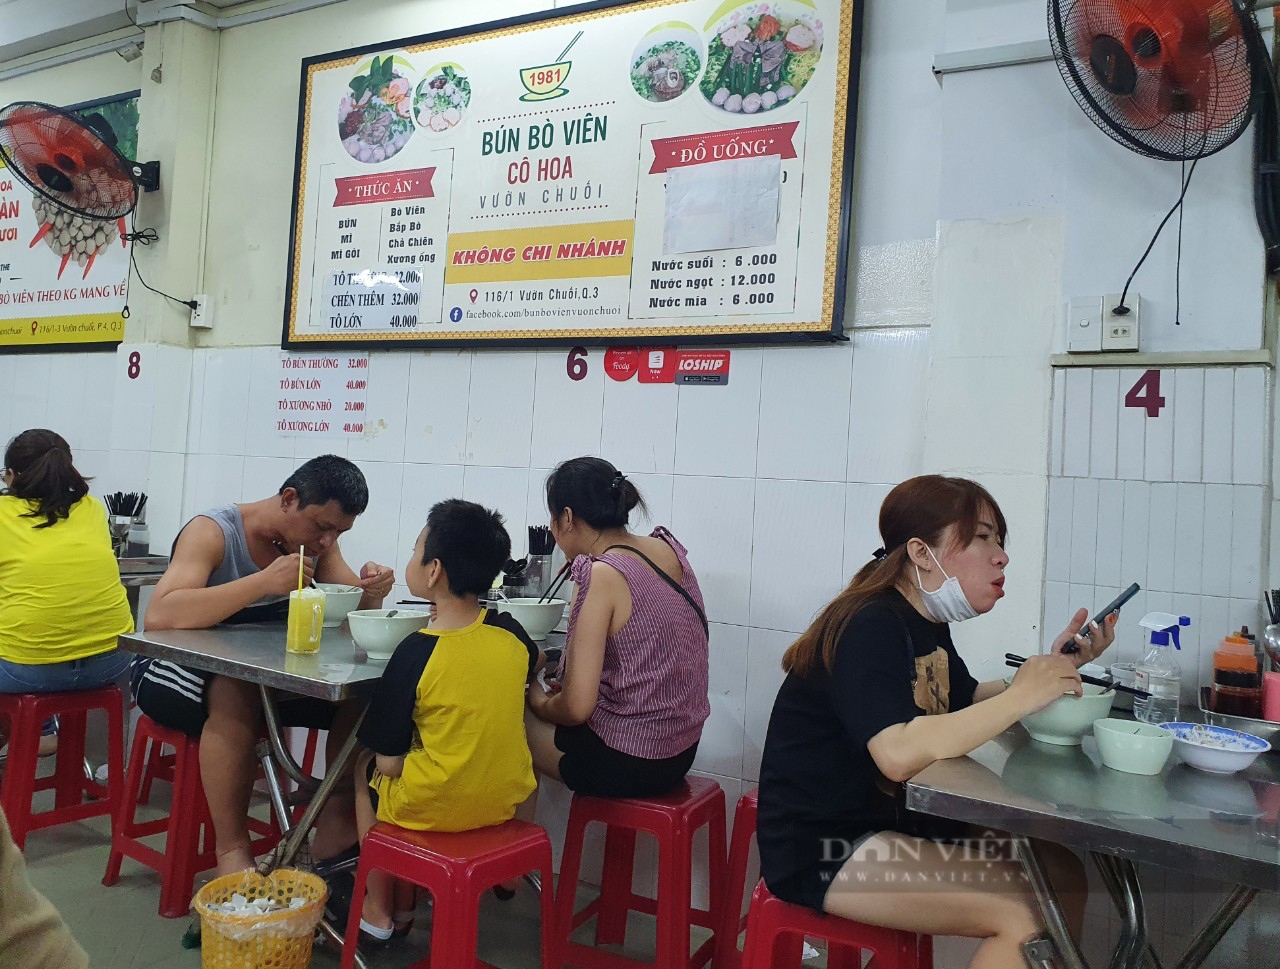 Bún bò viên Vườn Chuối ở Sài Gòn, món ăn nghe lạ lạ mà hút khách suốt 40 năm - Ảnh 4.